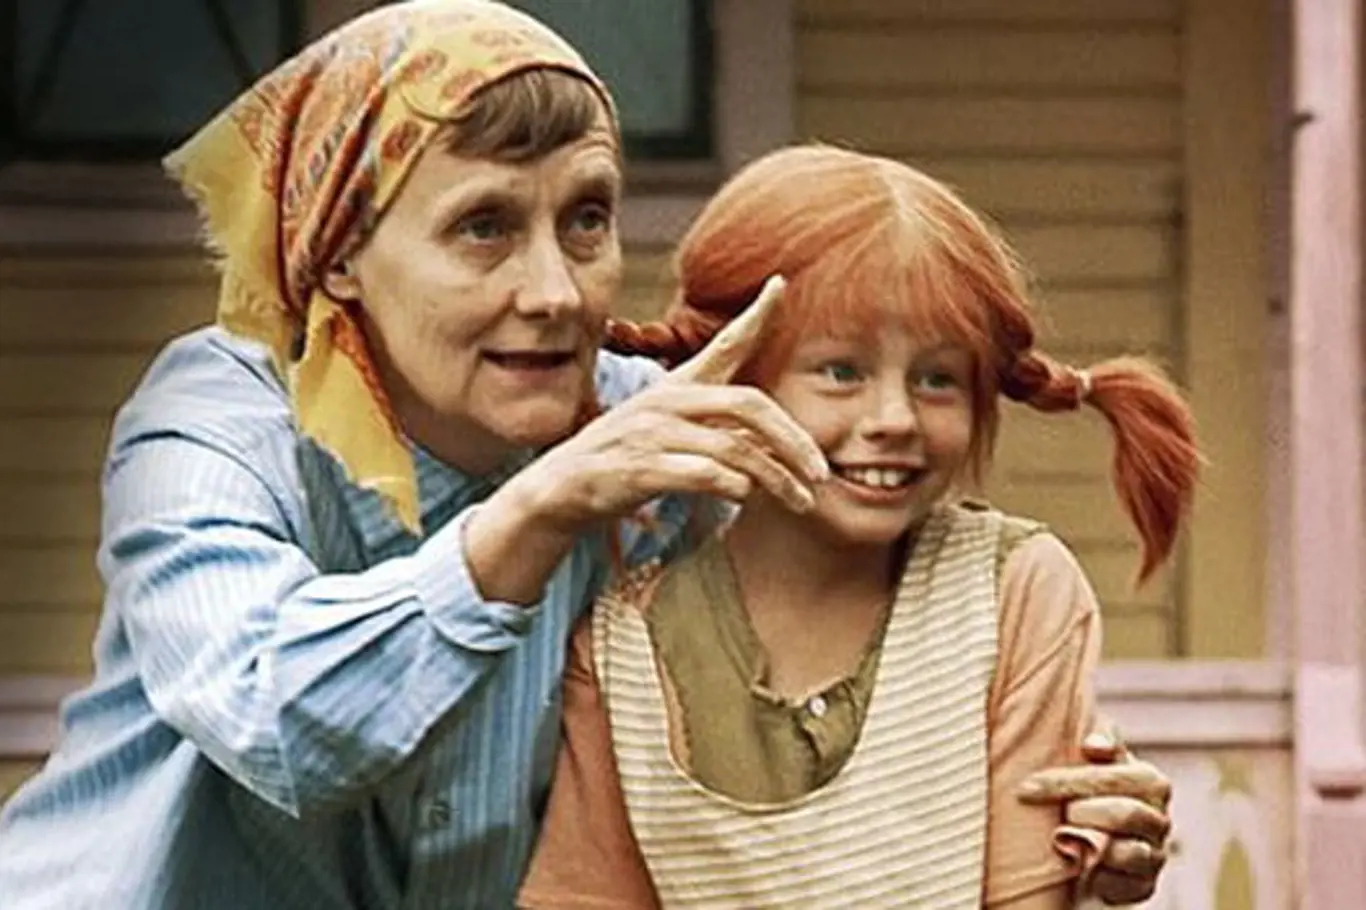 Astrid Lindgrenová během natáčení Pipi dlouhé punčochy